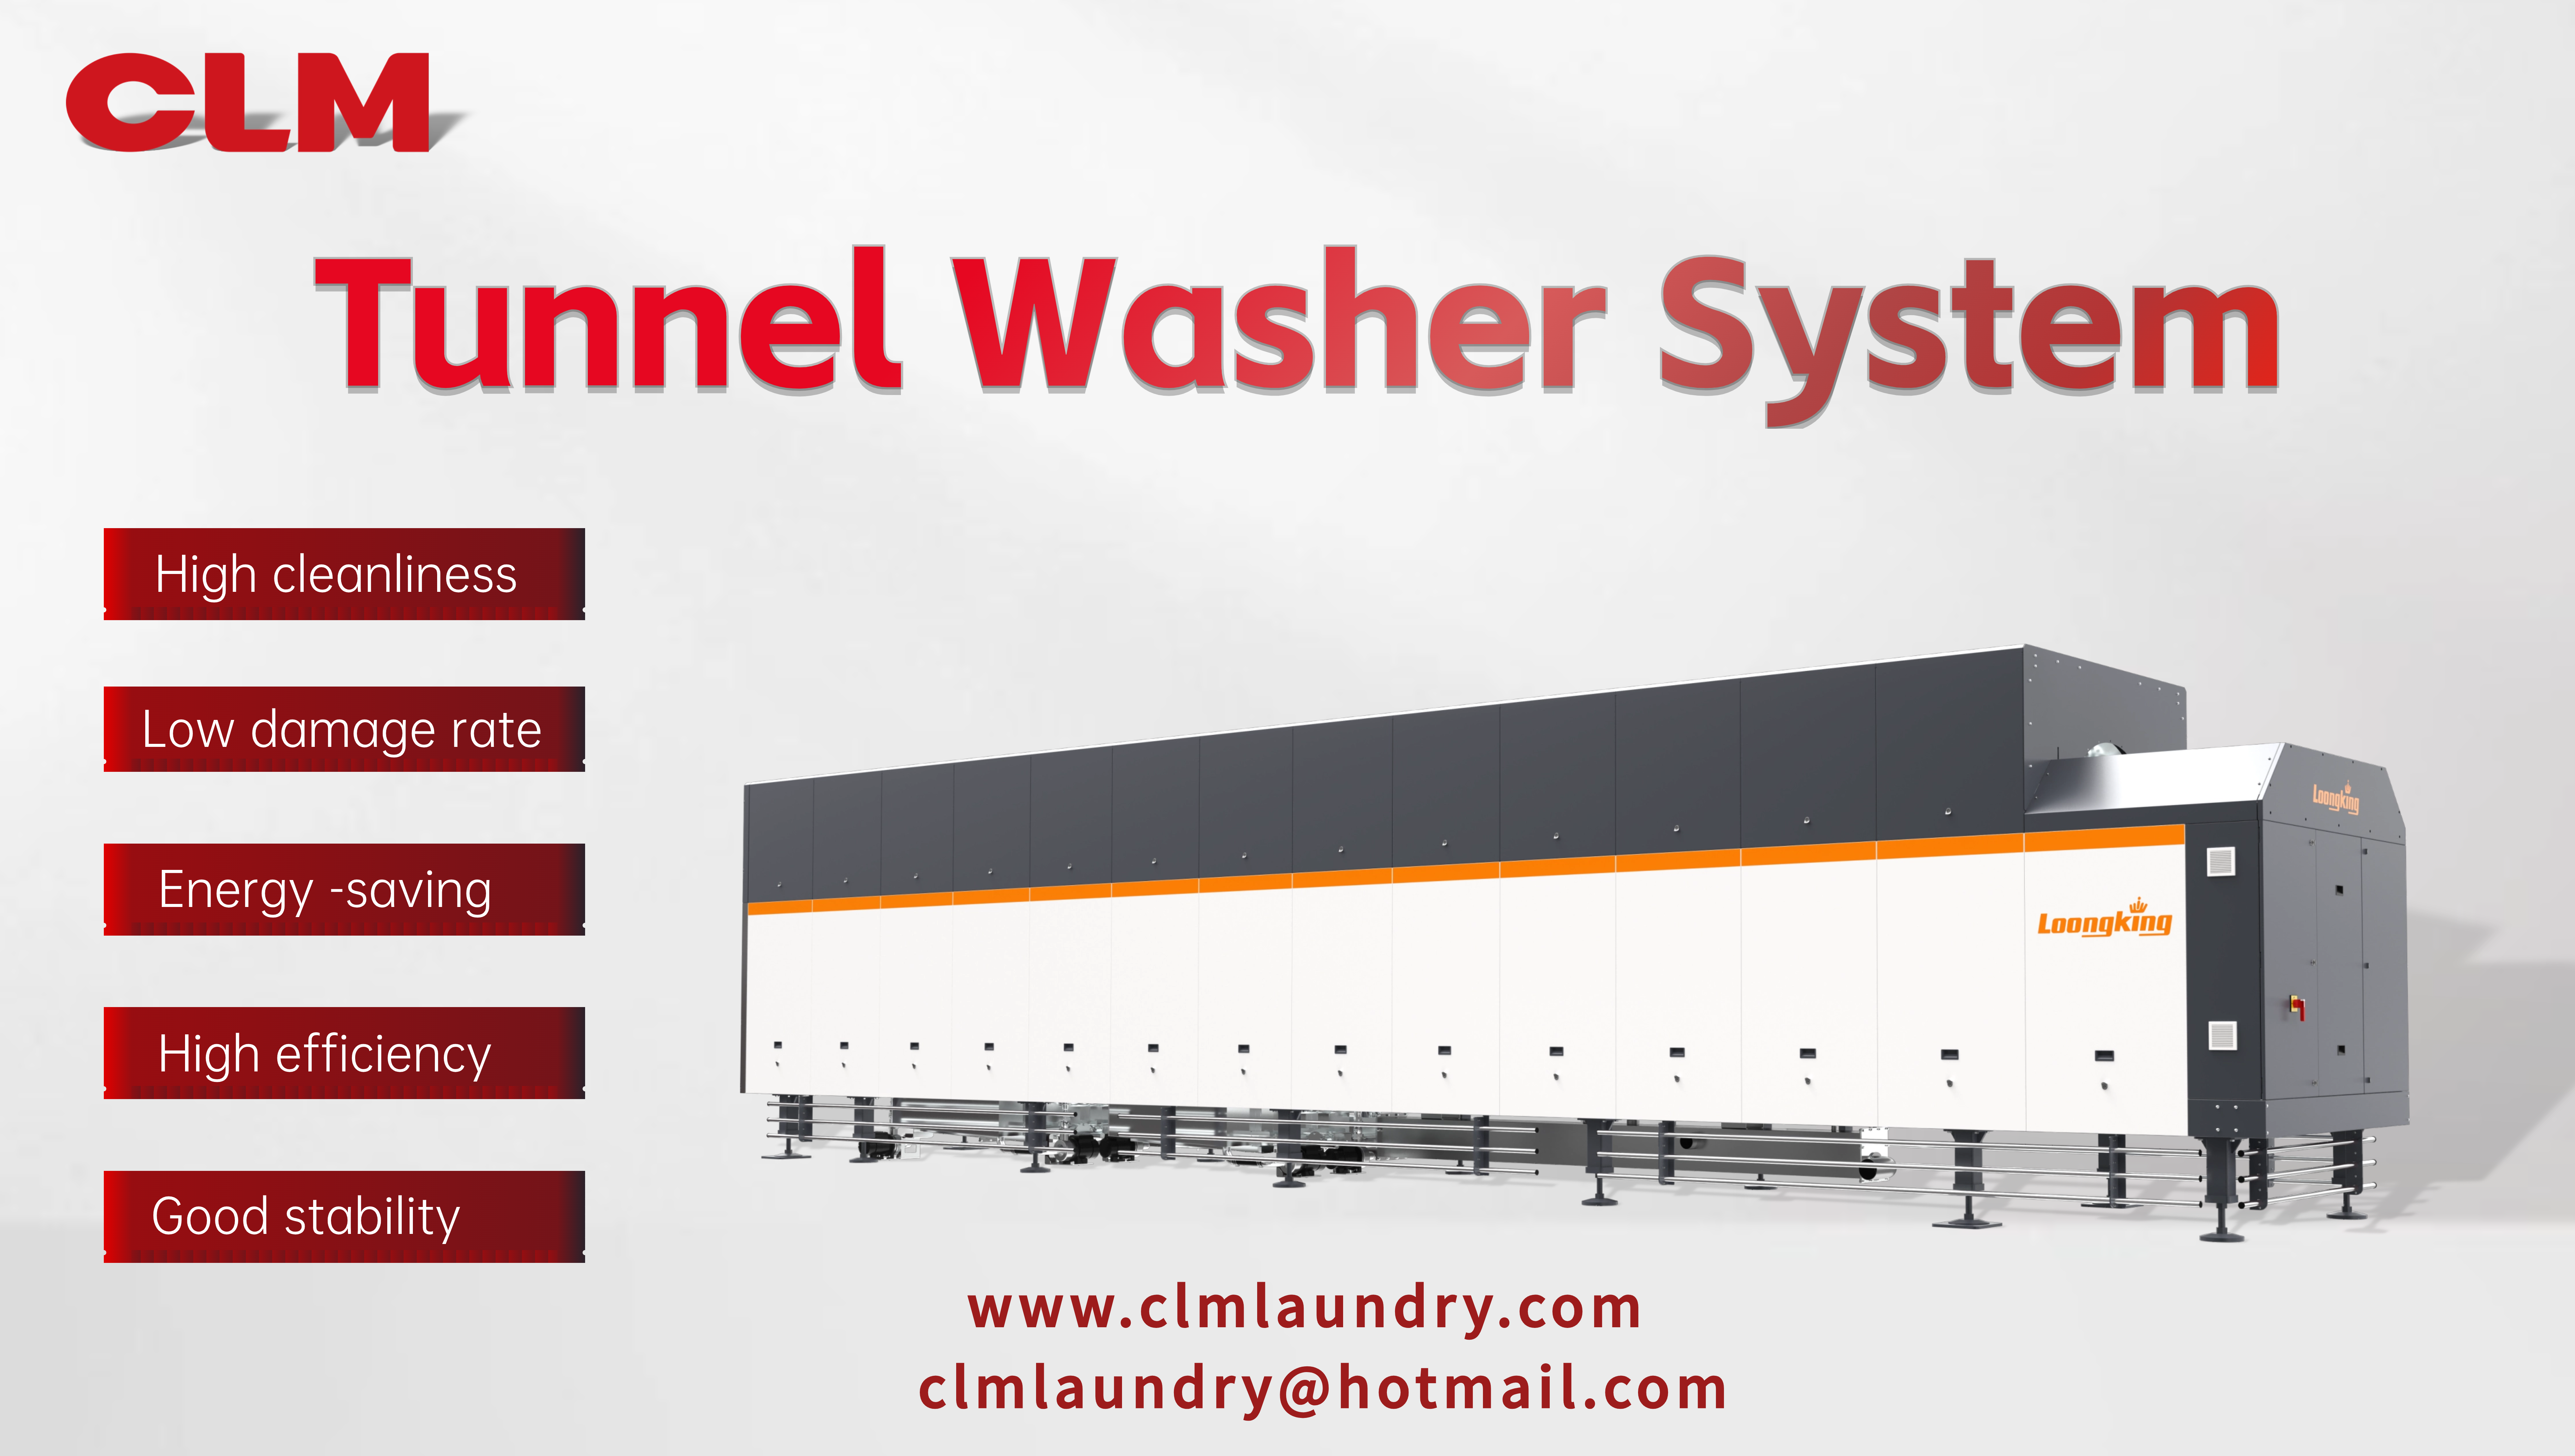 CLM tunnelwasmachine realiseert met slechts één medewerker een wascapaciteit van 1,8 ton per uur!